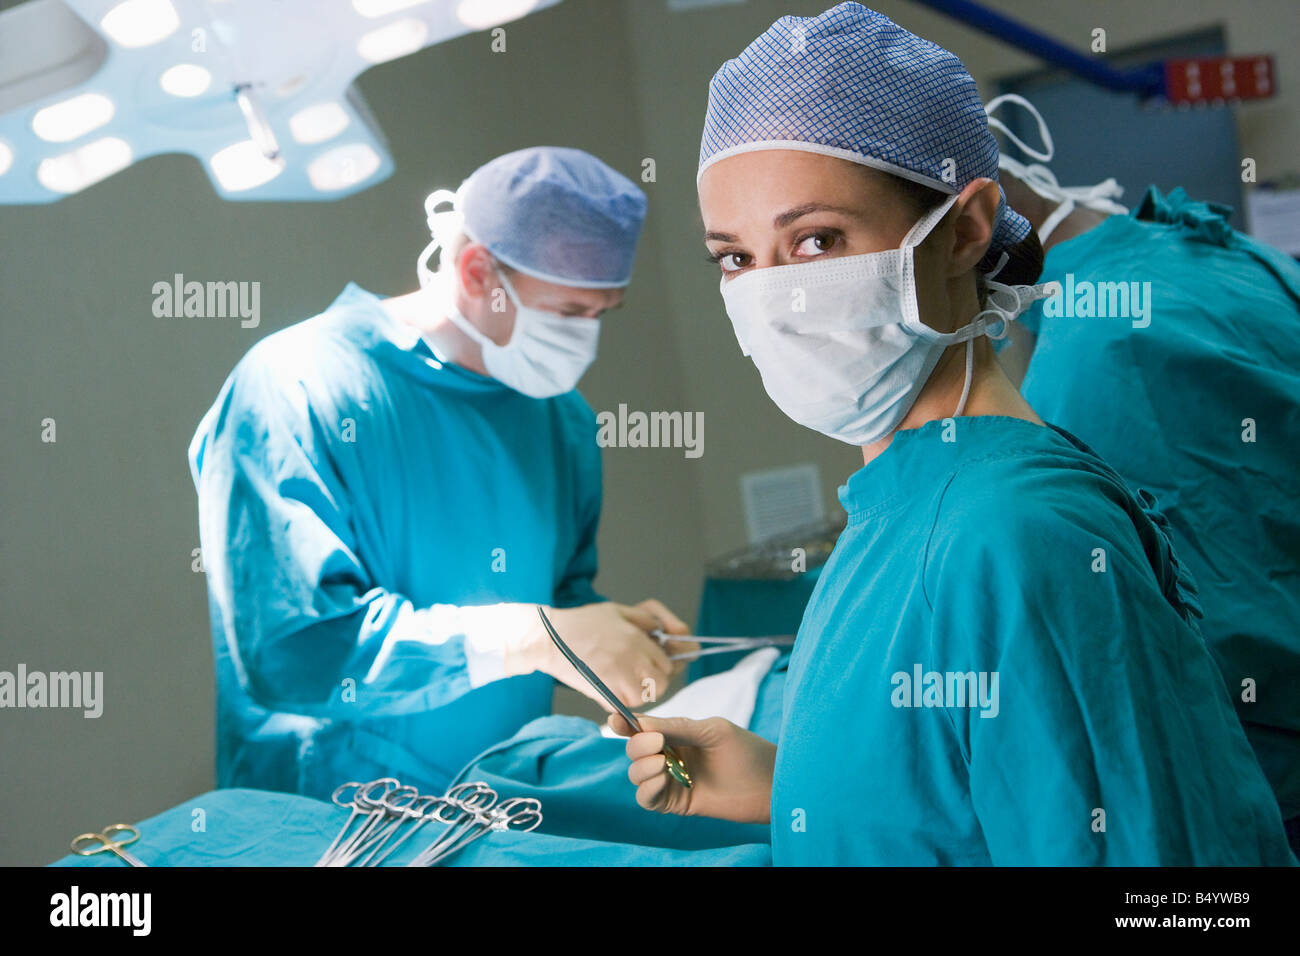 Se préparer à un chirurgien opérant sur un patient Banque D'Images